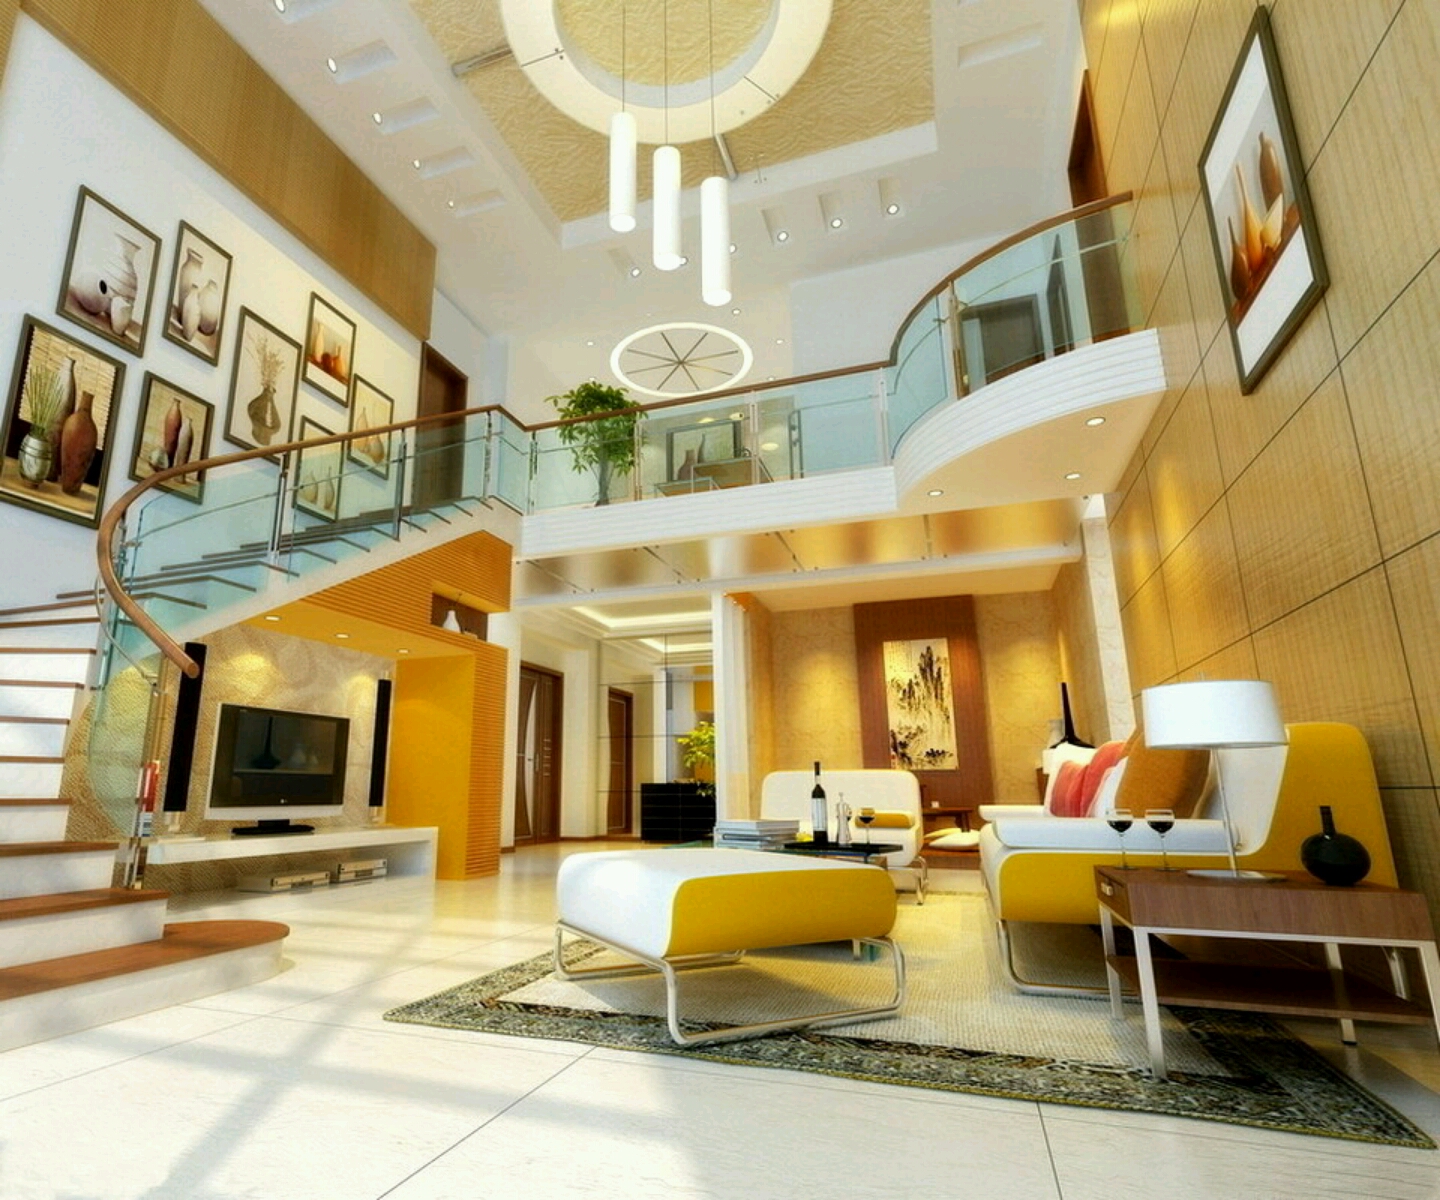 Desain interior rumah mewah minimalis type 45 desain interior ruang